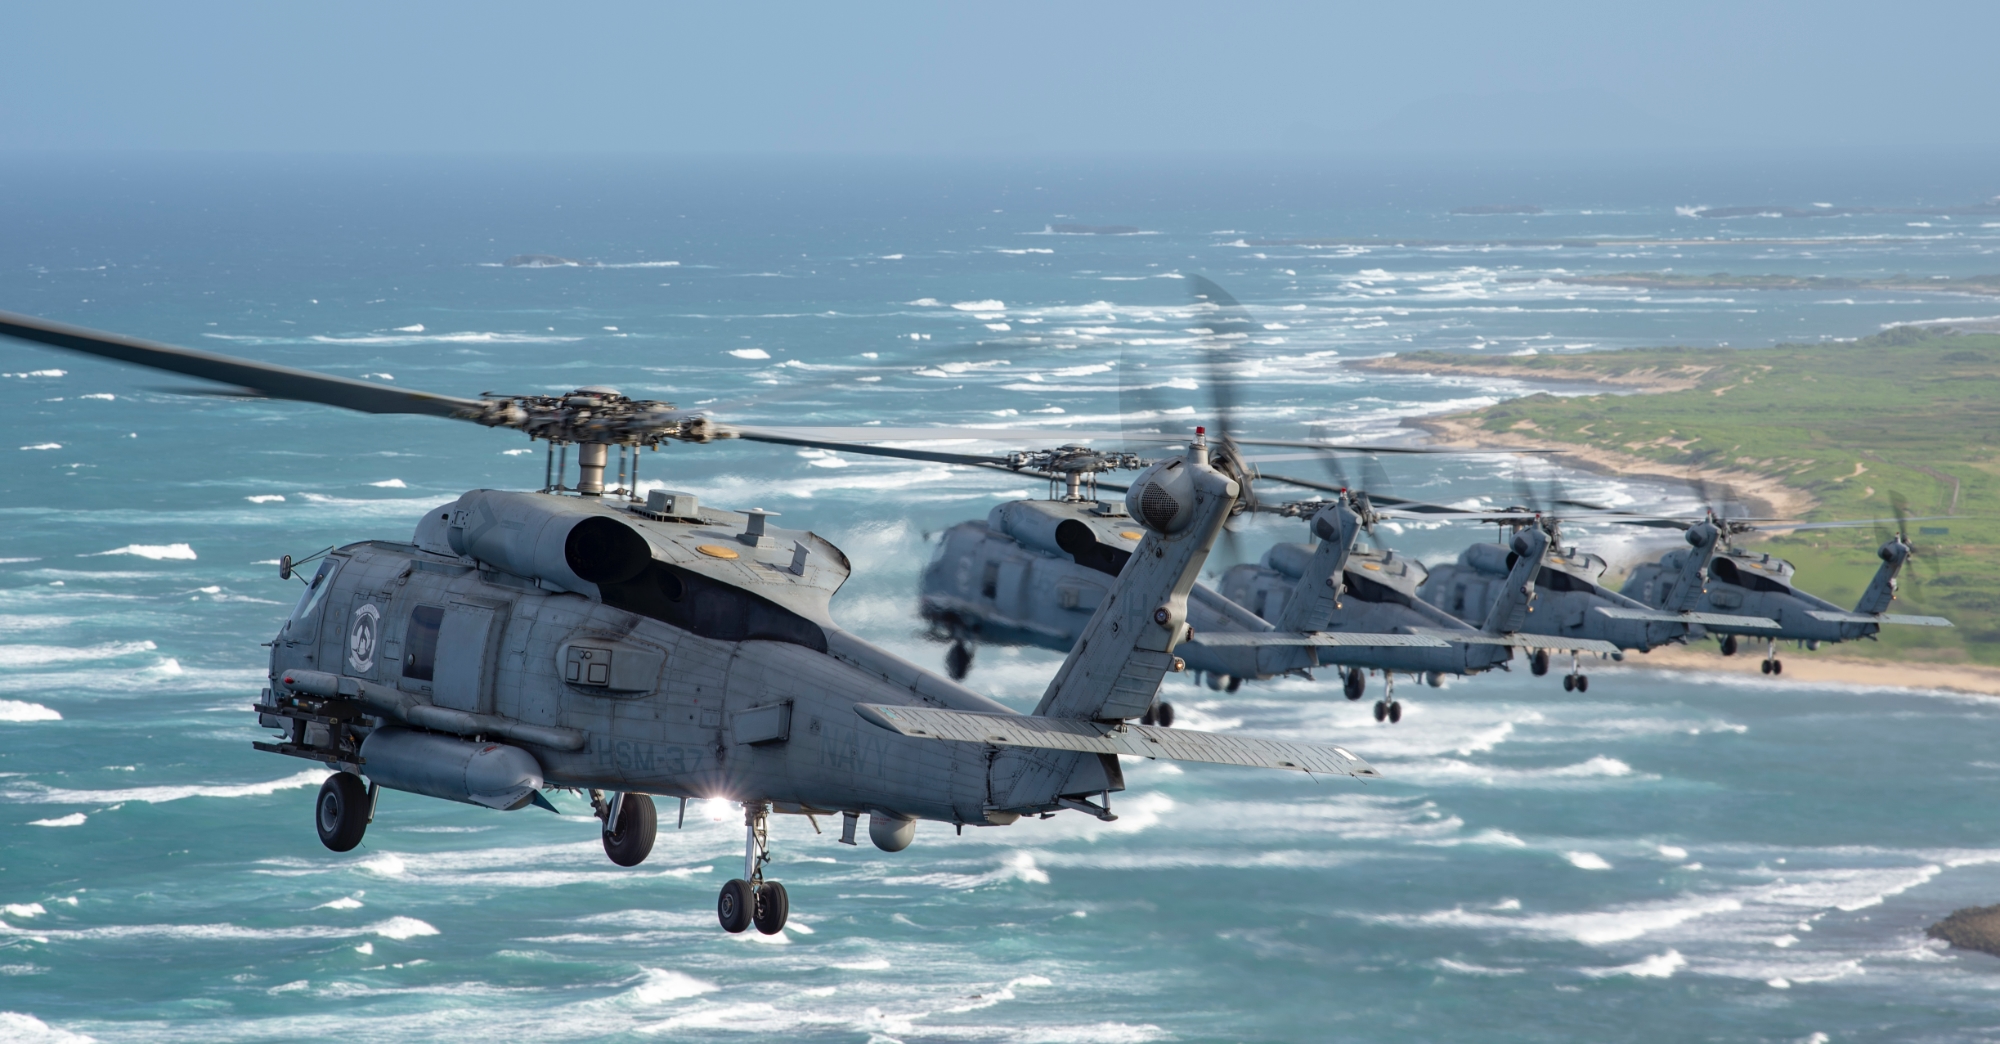 Kontrakt o wartości 380 mln USD: Hiszpania zamawia od Lockheed Martin 8 śmigłowców Sikorsky MH-60R Seahawk, które zastąpią śmigłowce Sikorsky SH-3 Sea King.